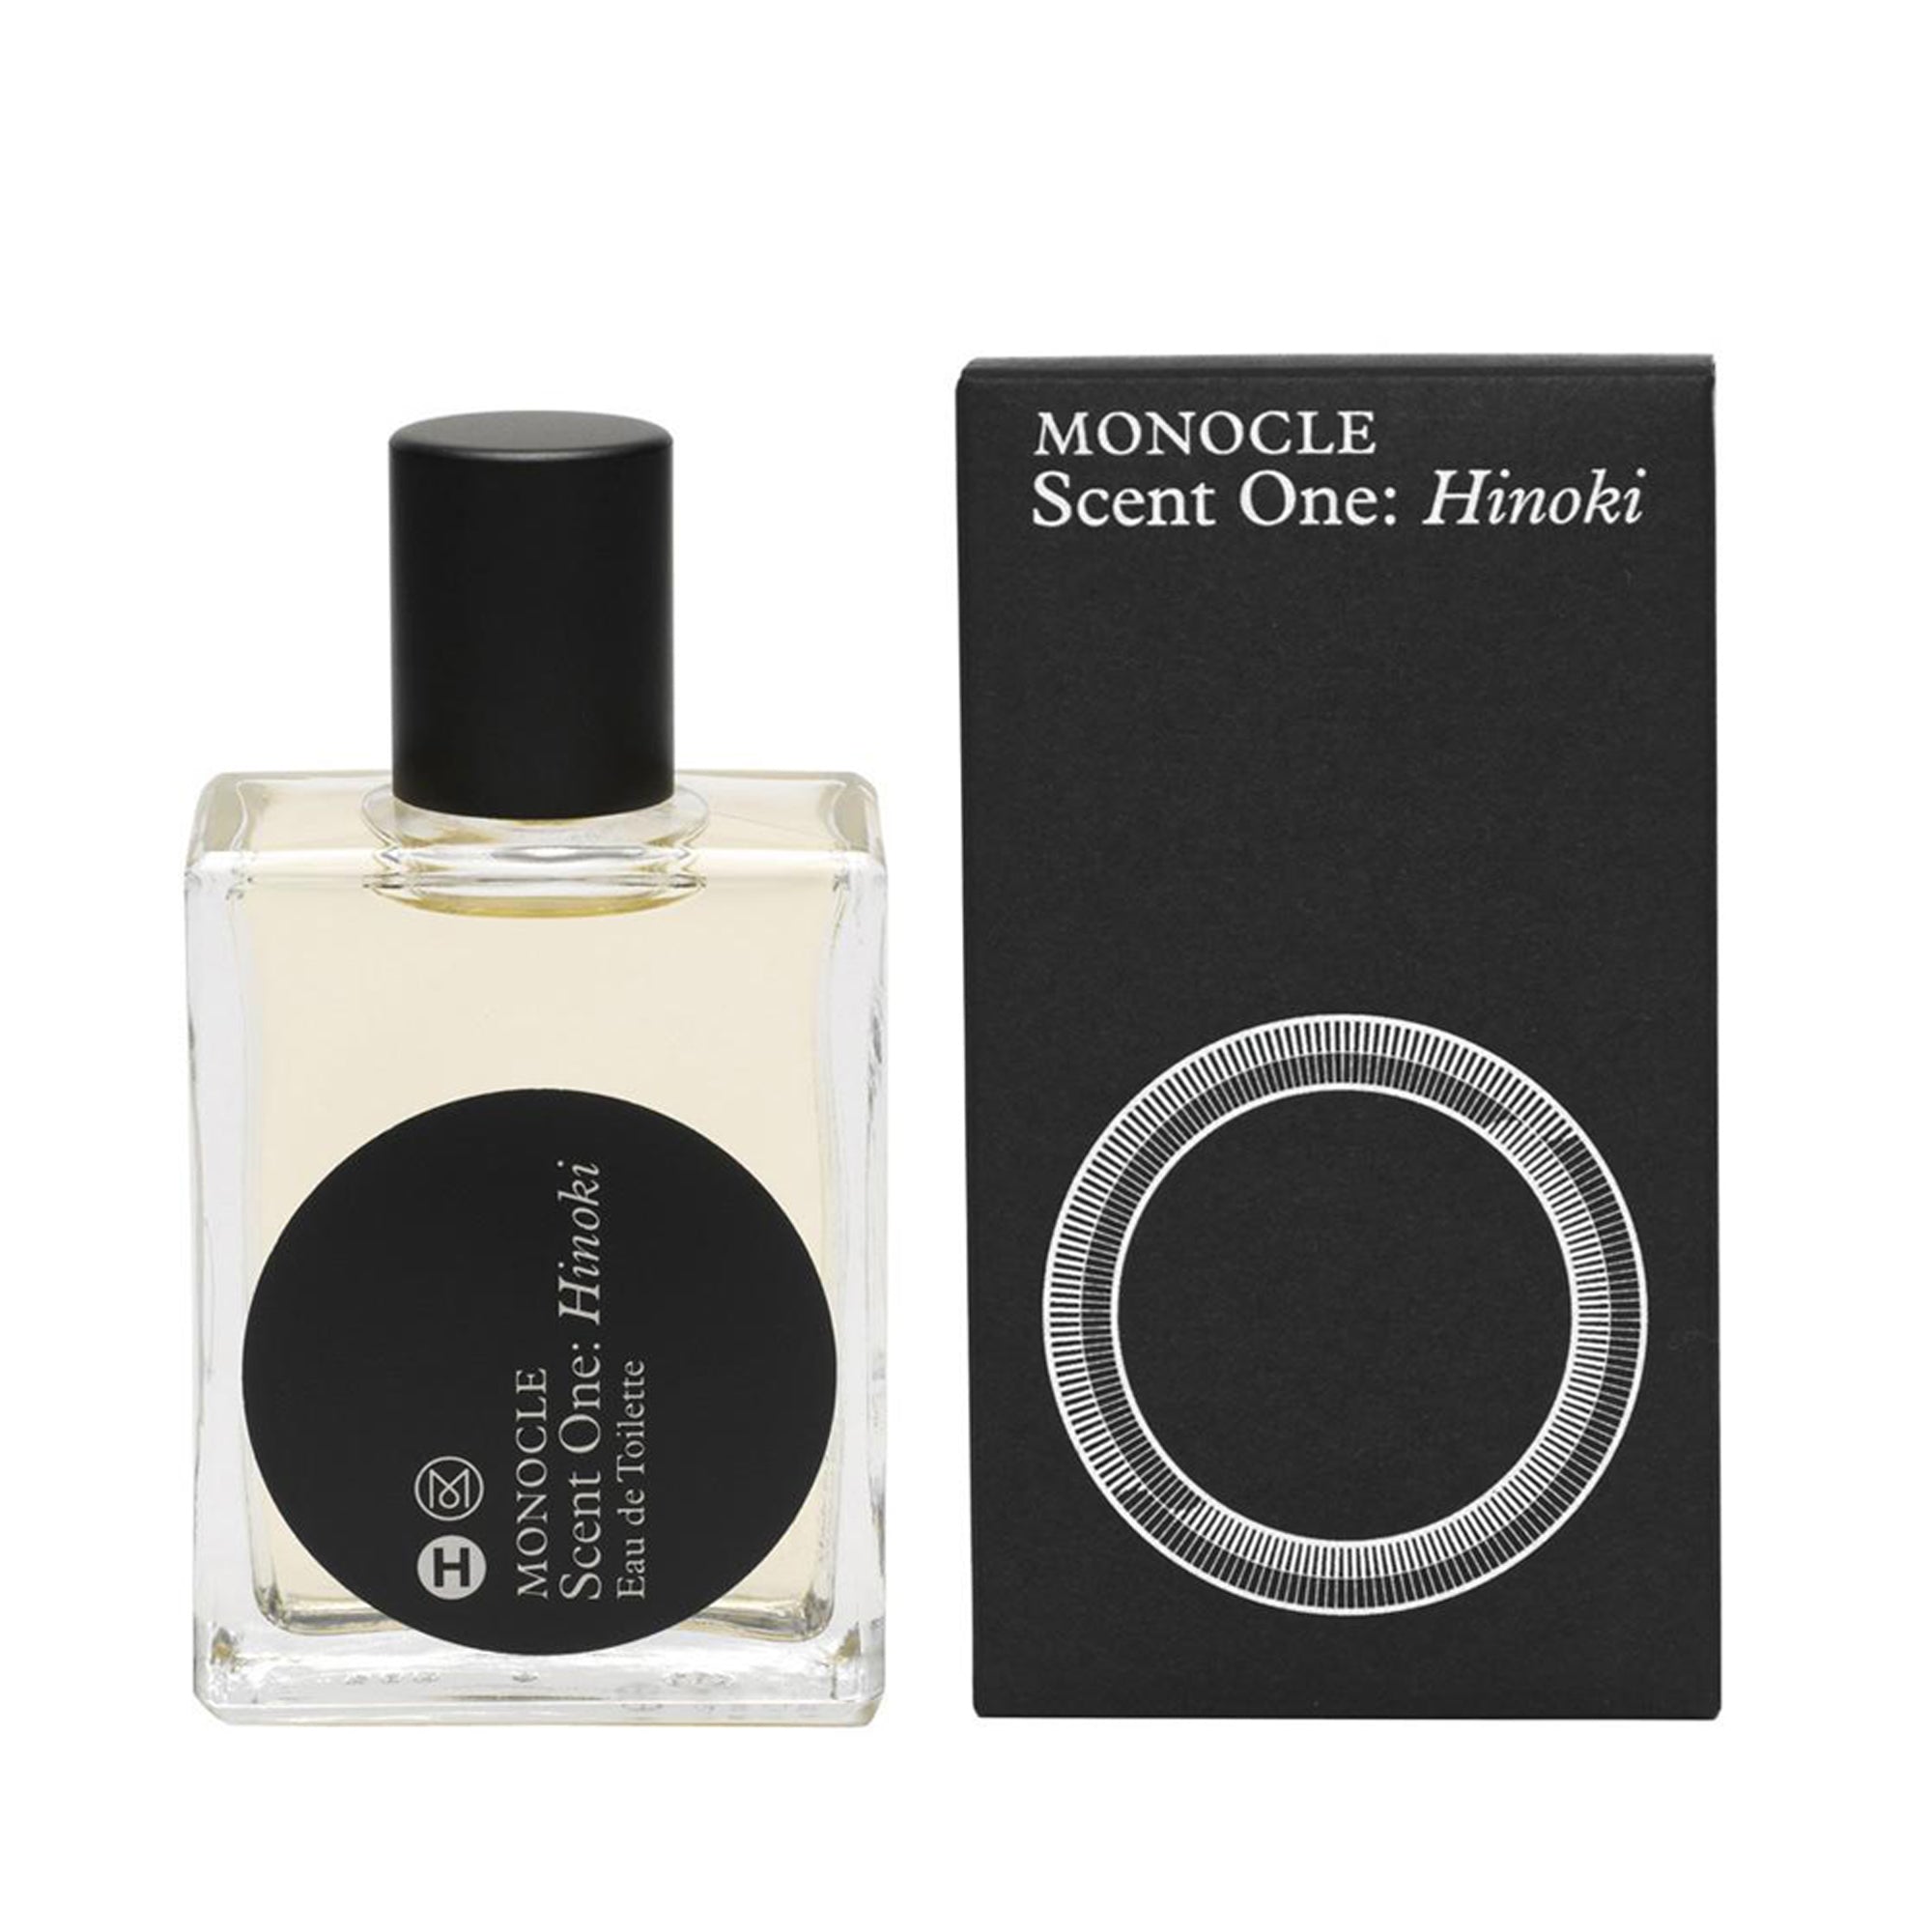 CDG PARFUM - Monocle Scent One Hinoki Eau de Toilette - (50ml natural spray)